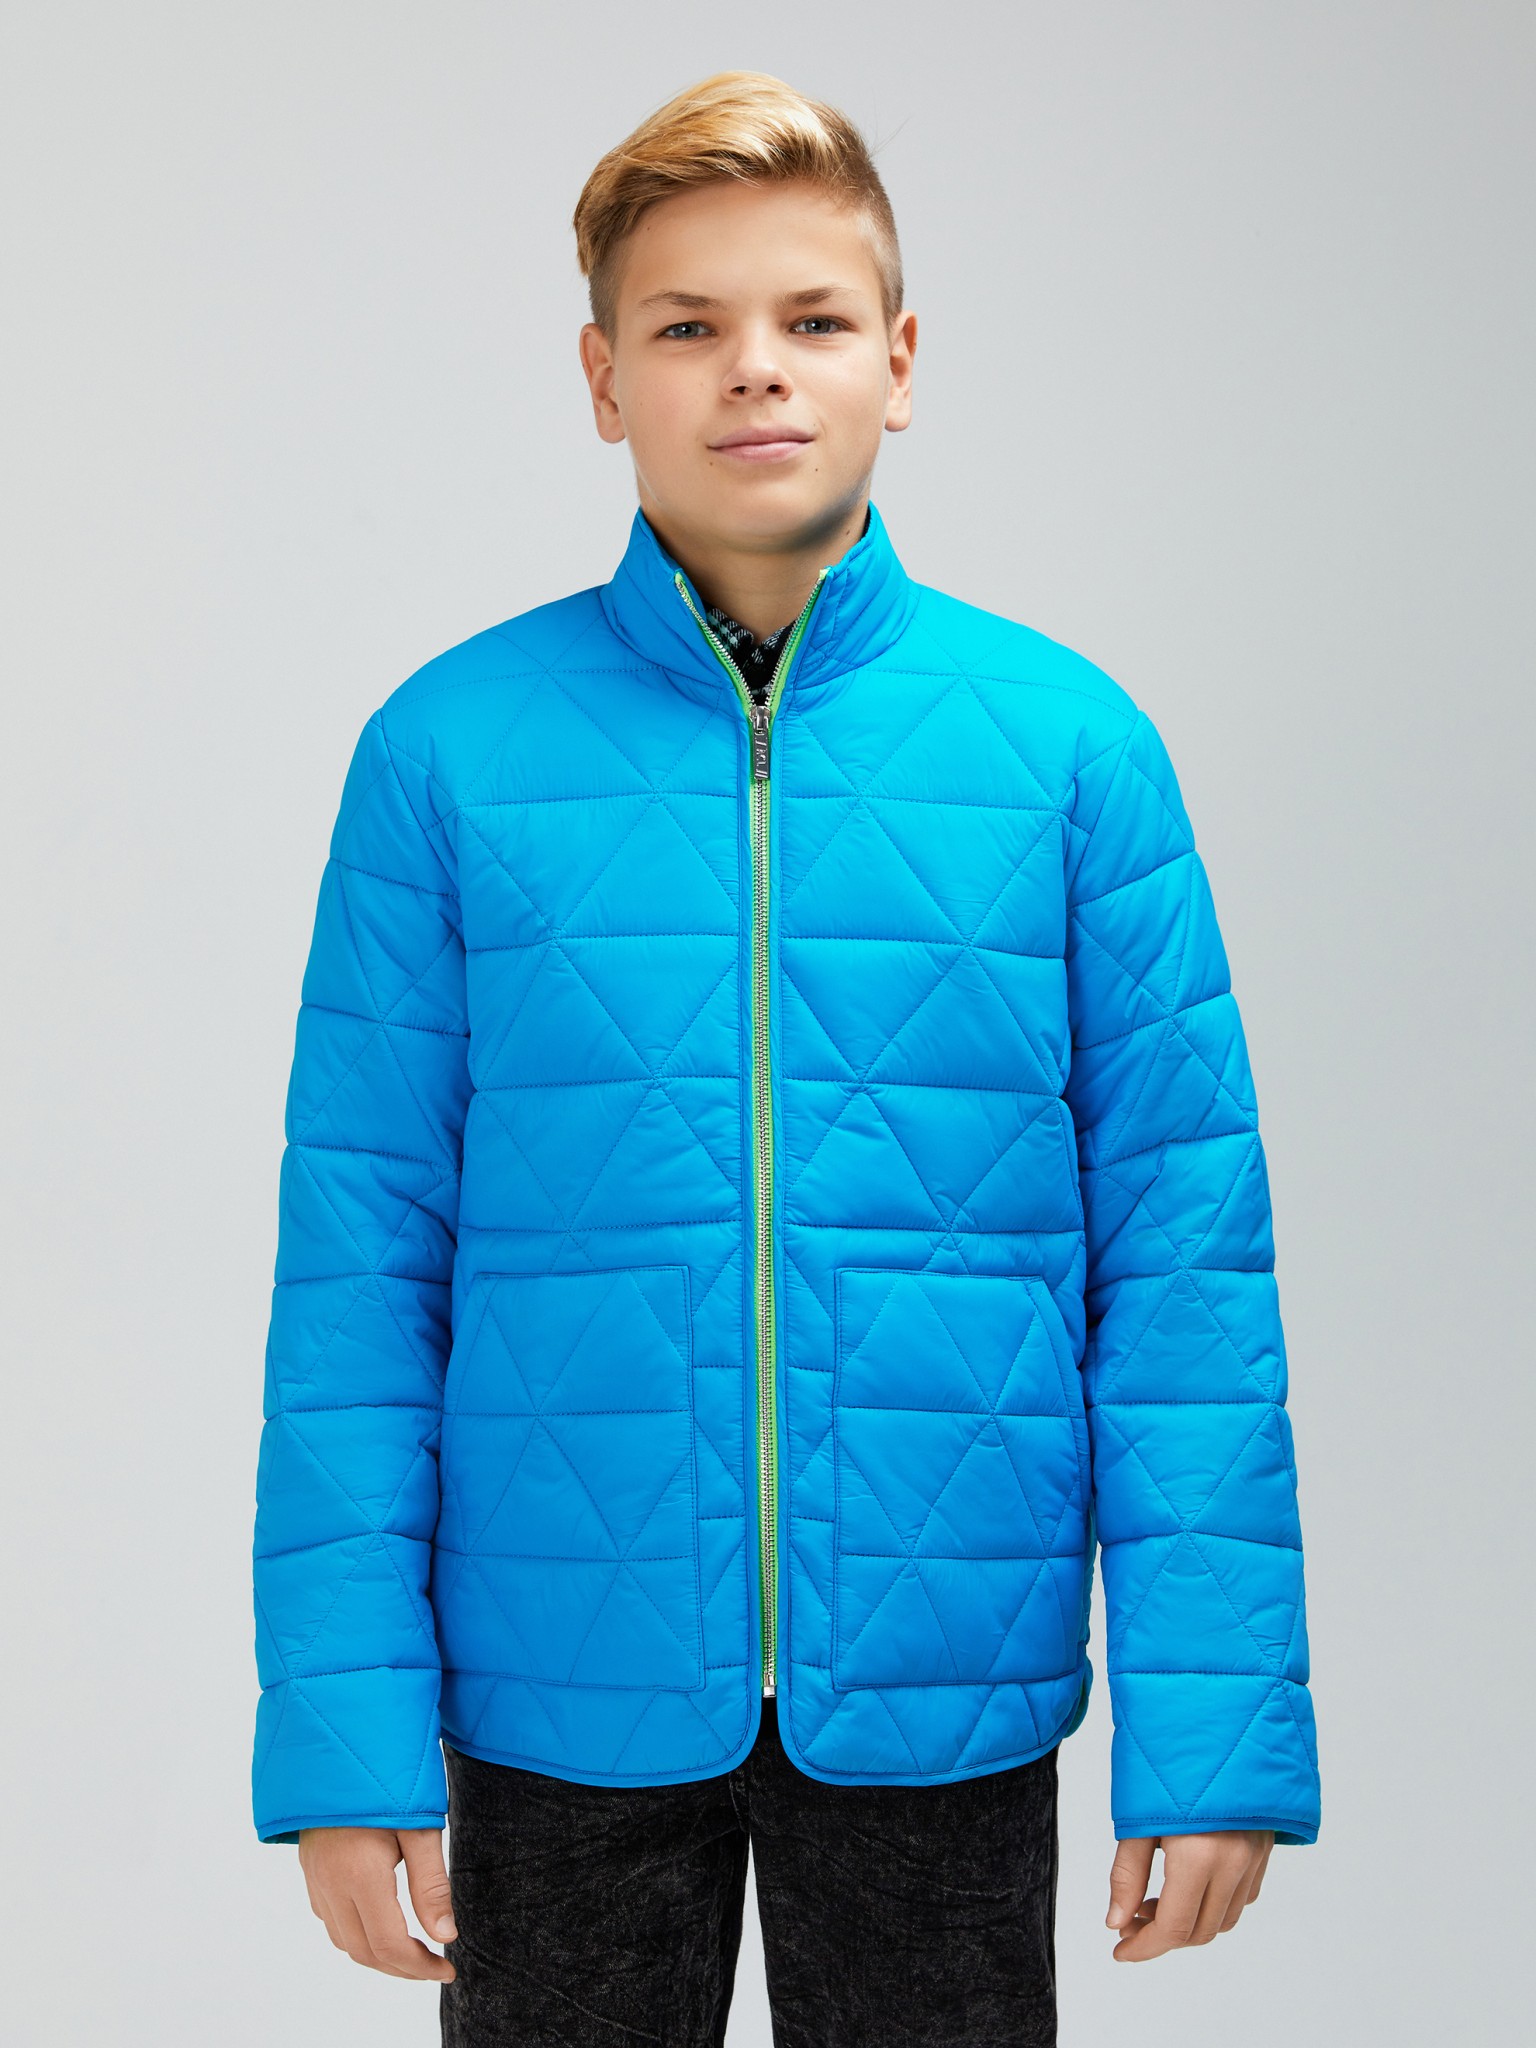 Детская куртка Acoola 20140130064 синего цвета, размер 134.